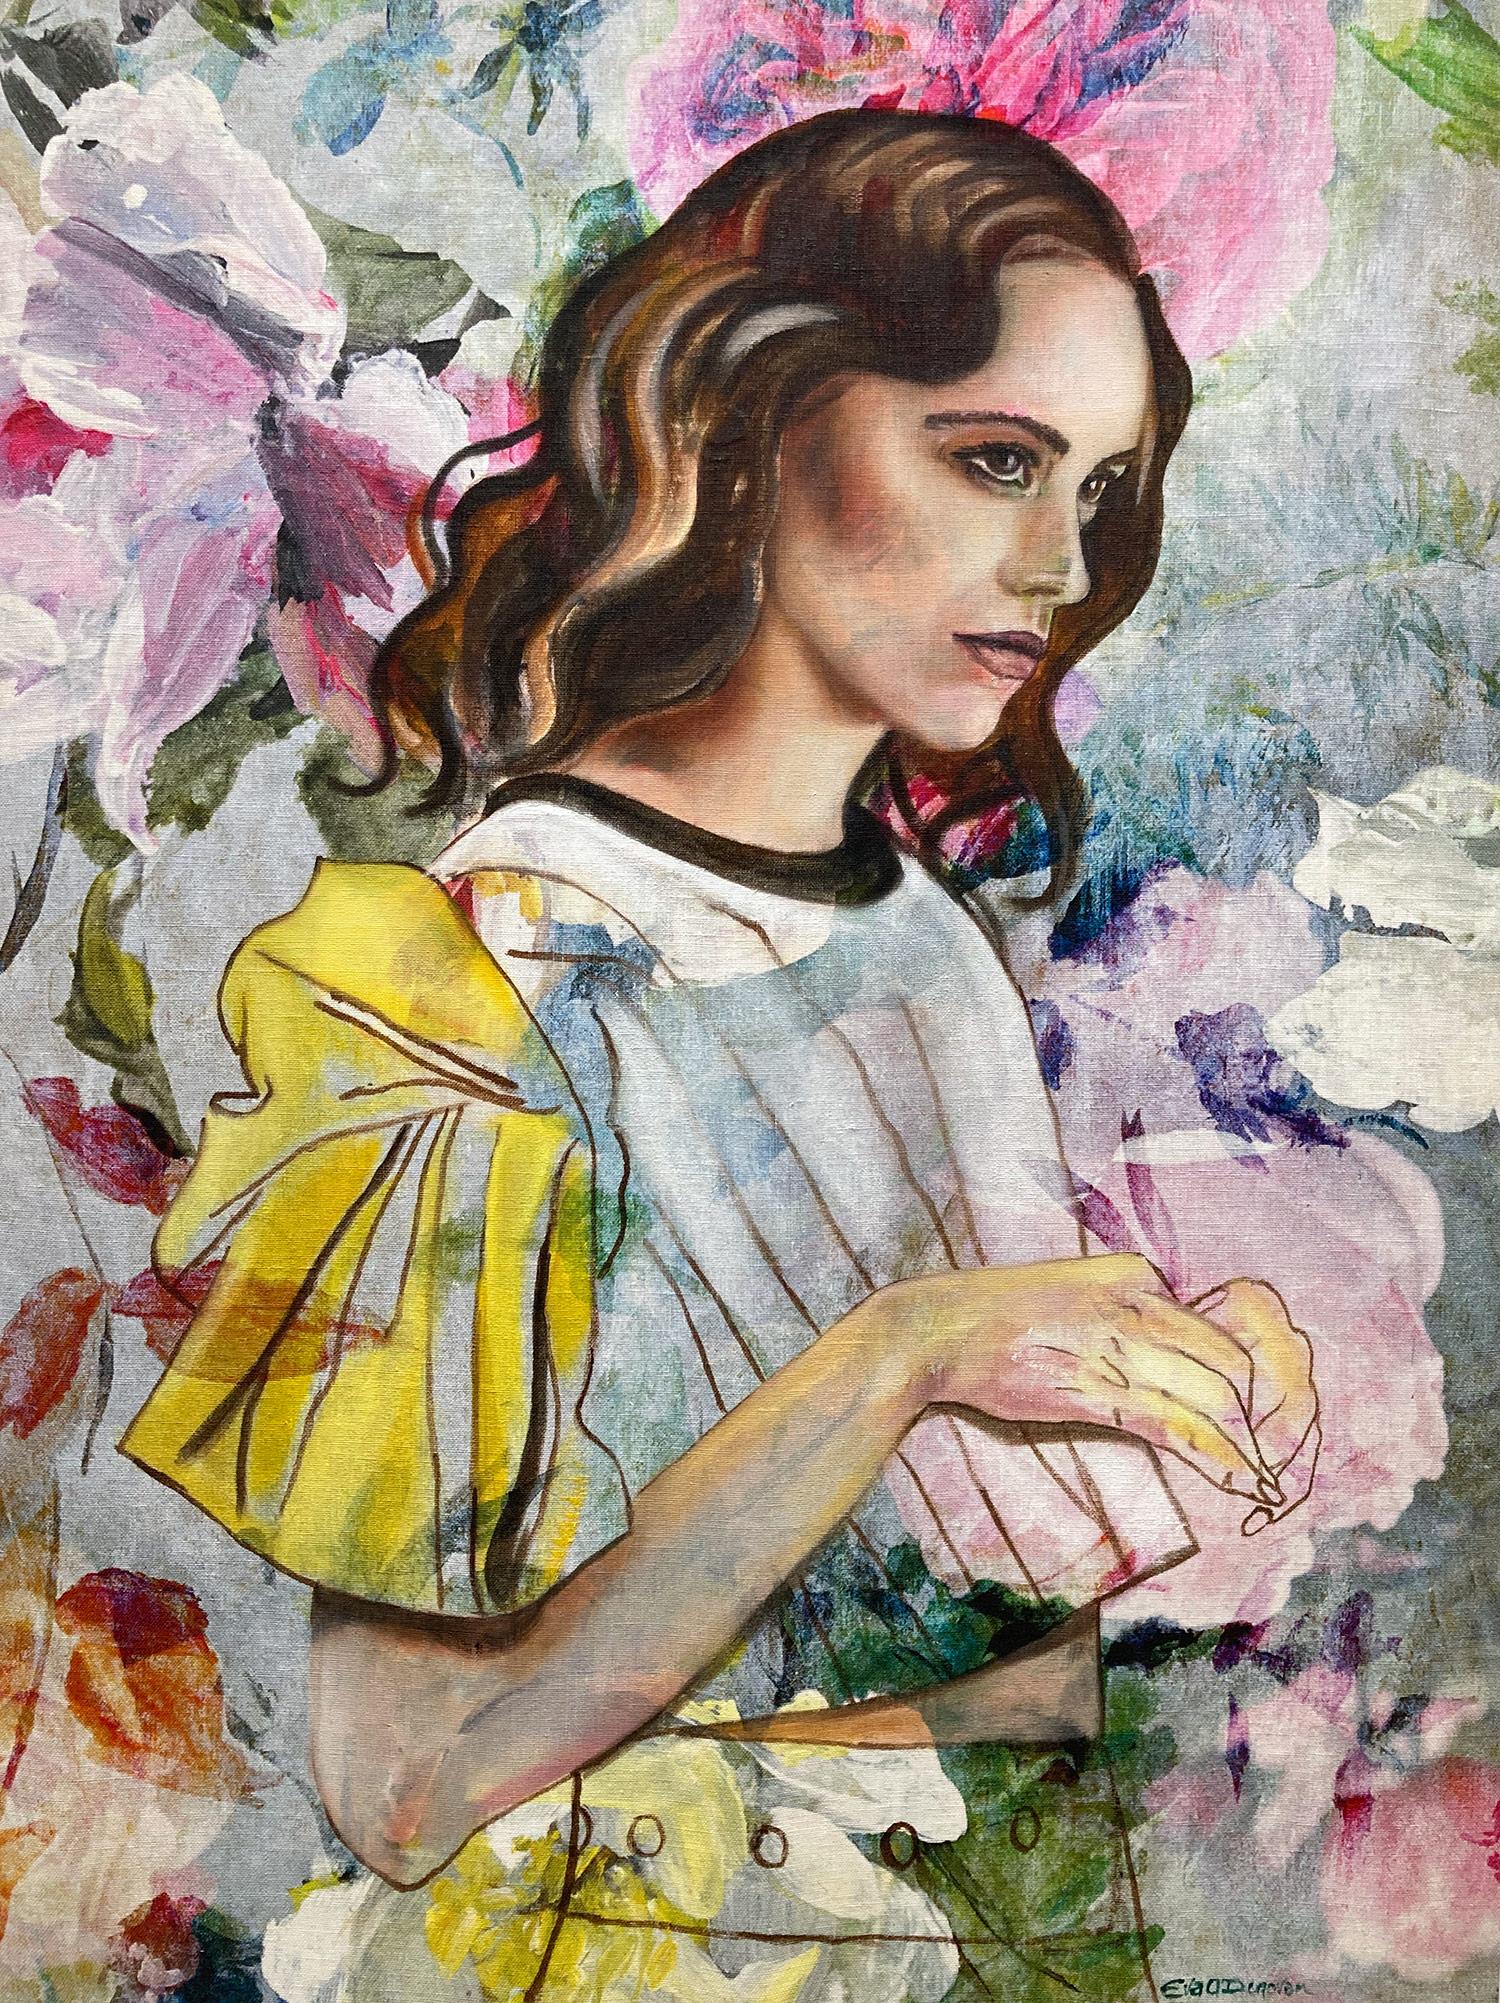 Eva O’Donovan  Abstract Painting – Zeitgenössisches Ölgemälde „Maria“ auf Stoff eines Mädchens in Haute Couture-Mode